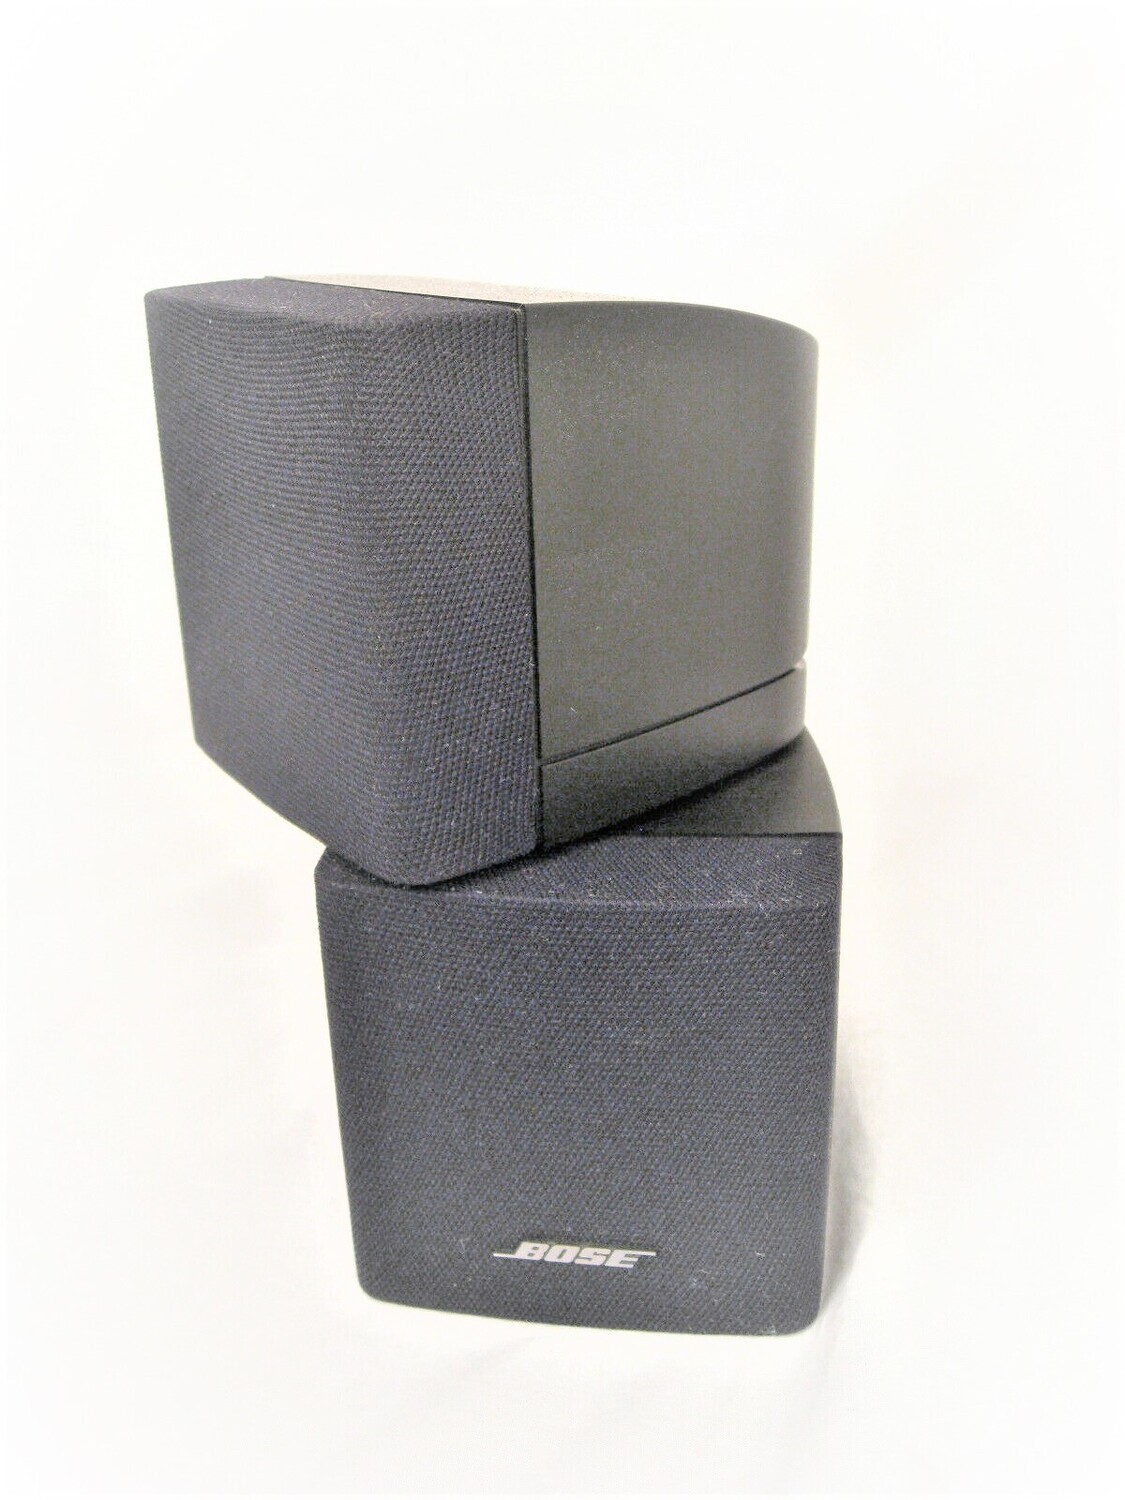 BOSE DOUBLE CUBE SPEAKER black/2nd generation - Single Speaker